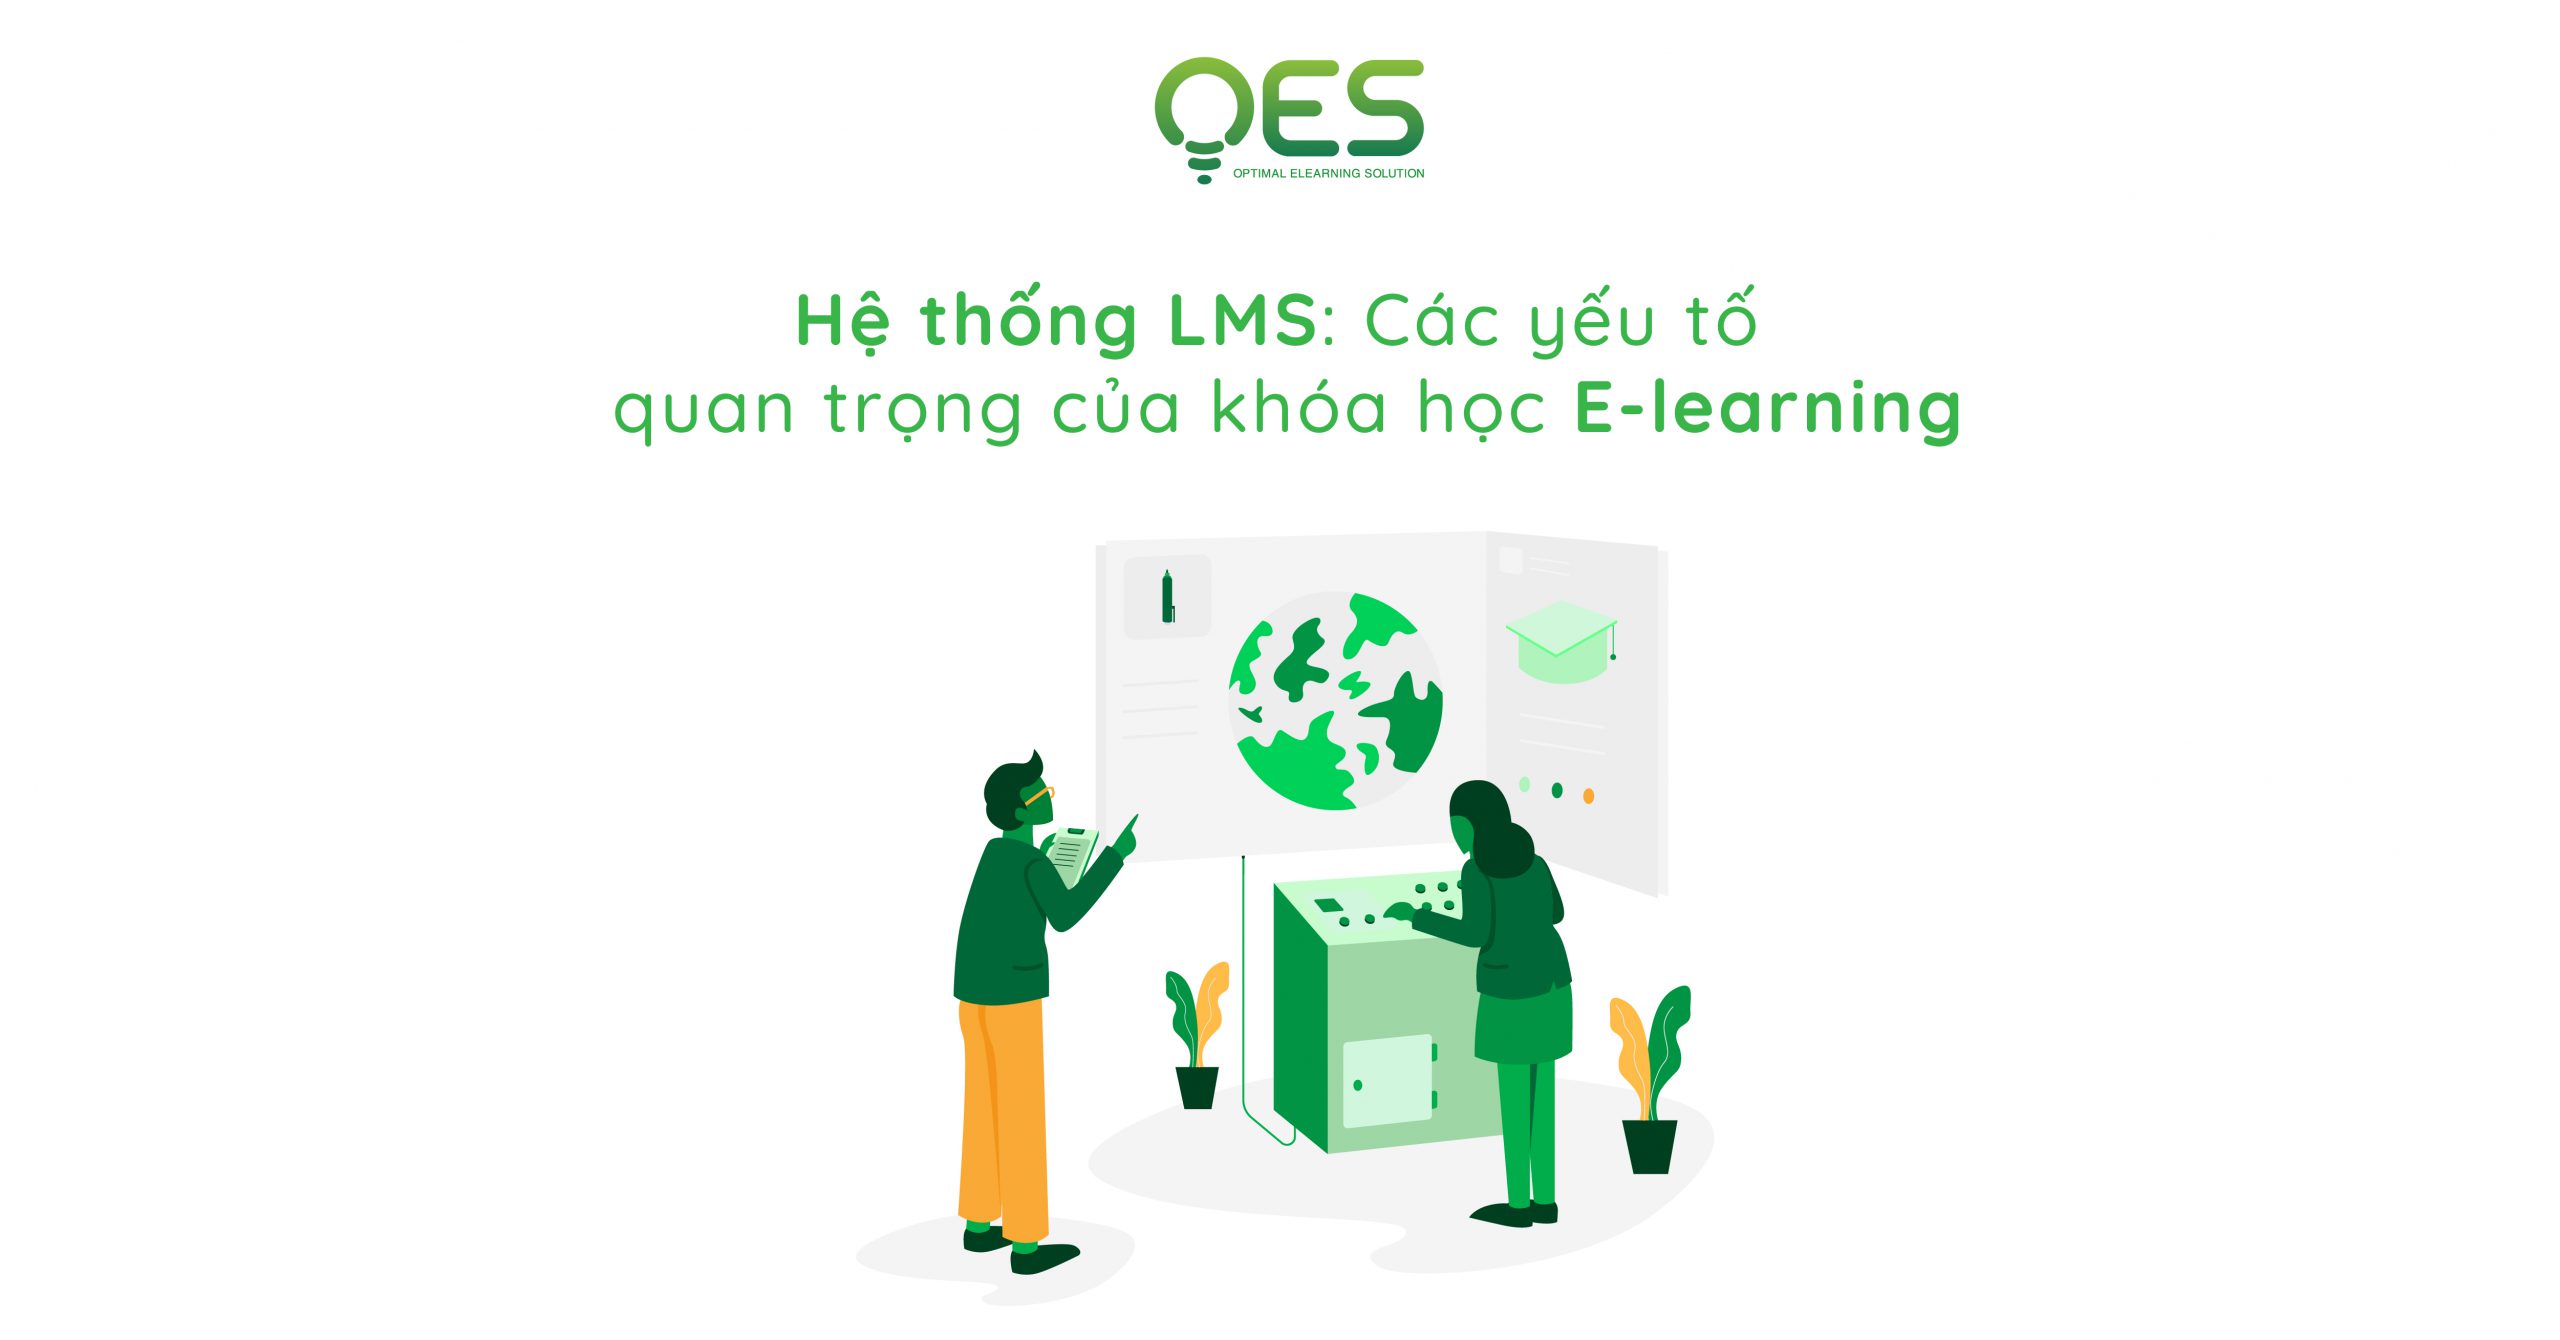 he-thong-lms-cac-yeu-to-quan-trong-cua-khoa-hoc-e-learning